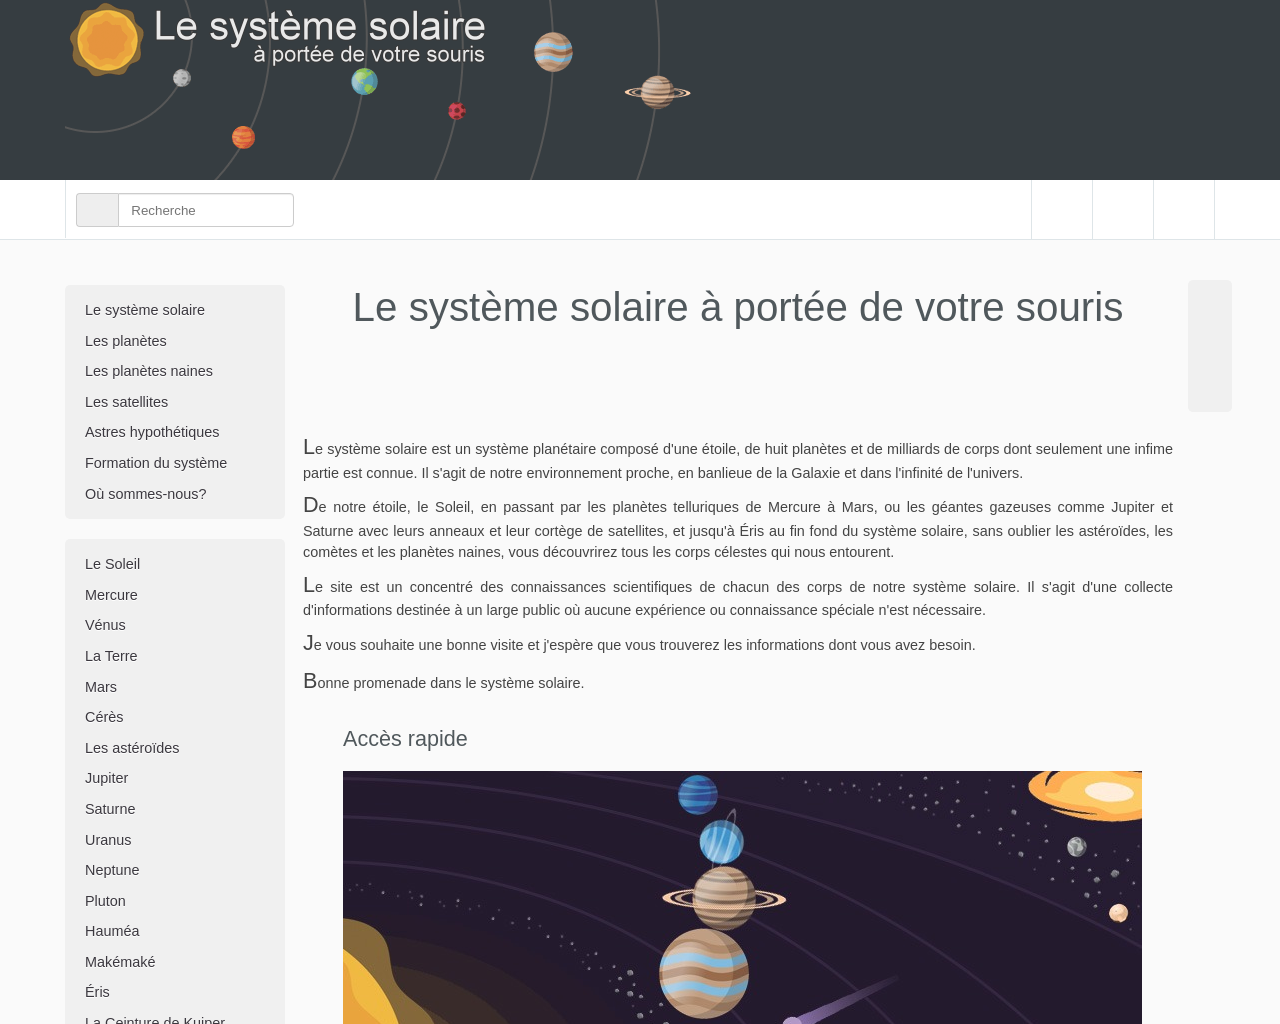 www.le-systeme-solaire.net